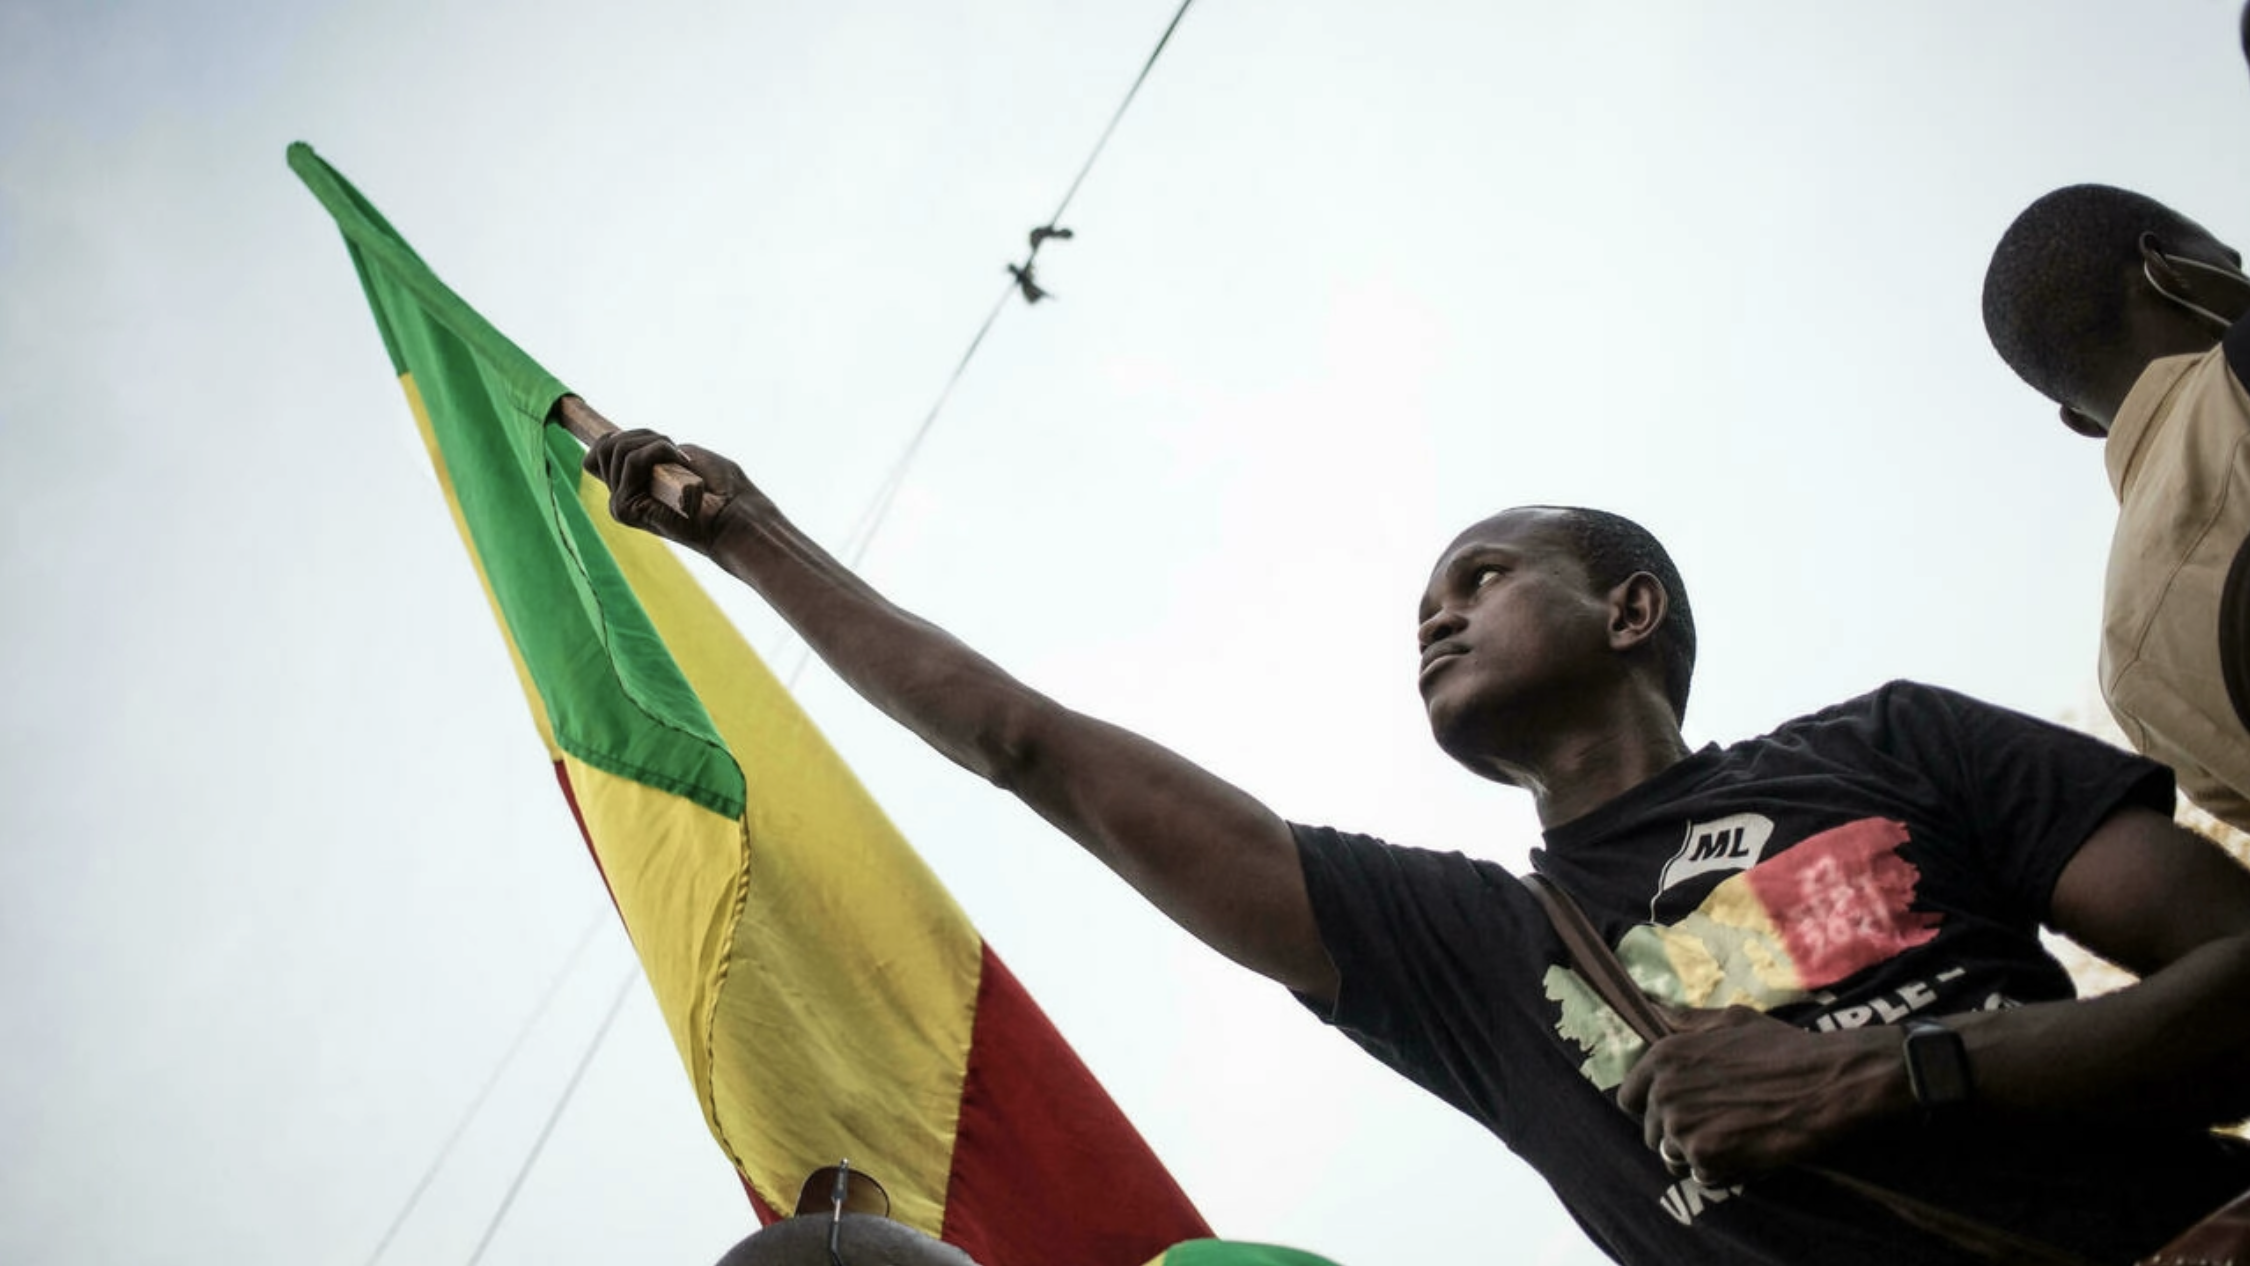 متظاهر يلوح بعلم مالي خلال مظاهرة في باماكو بتاريخ 10 كانون الثاني/يناير احتجاجا على عقوبات المجموعة الاقتصادية لدول غرب أفريقيا